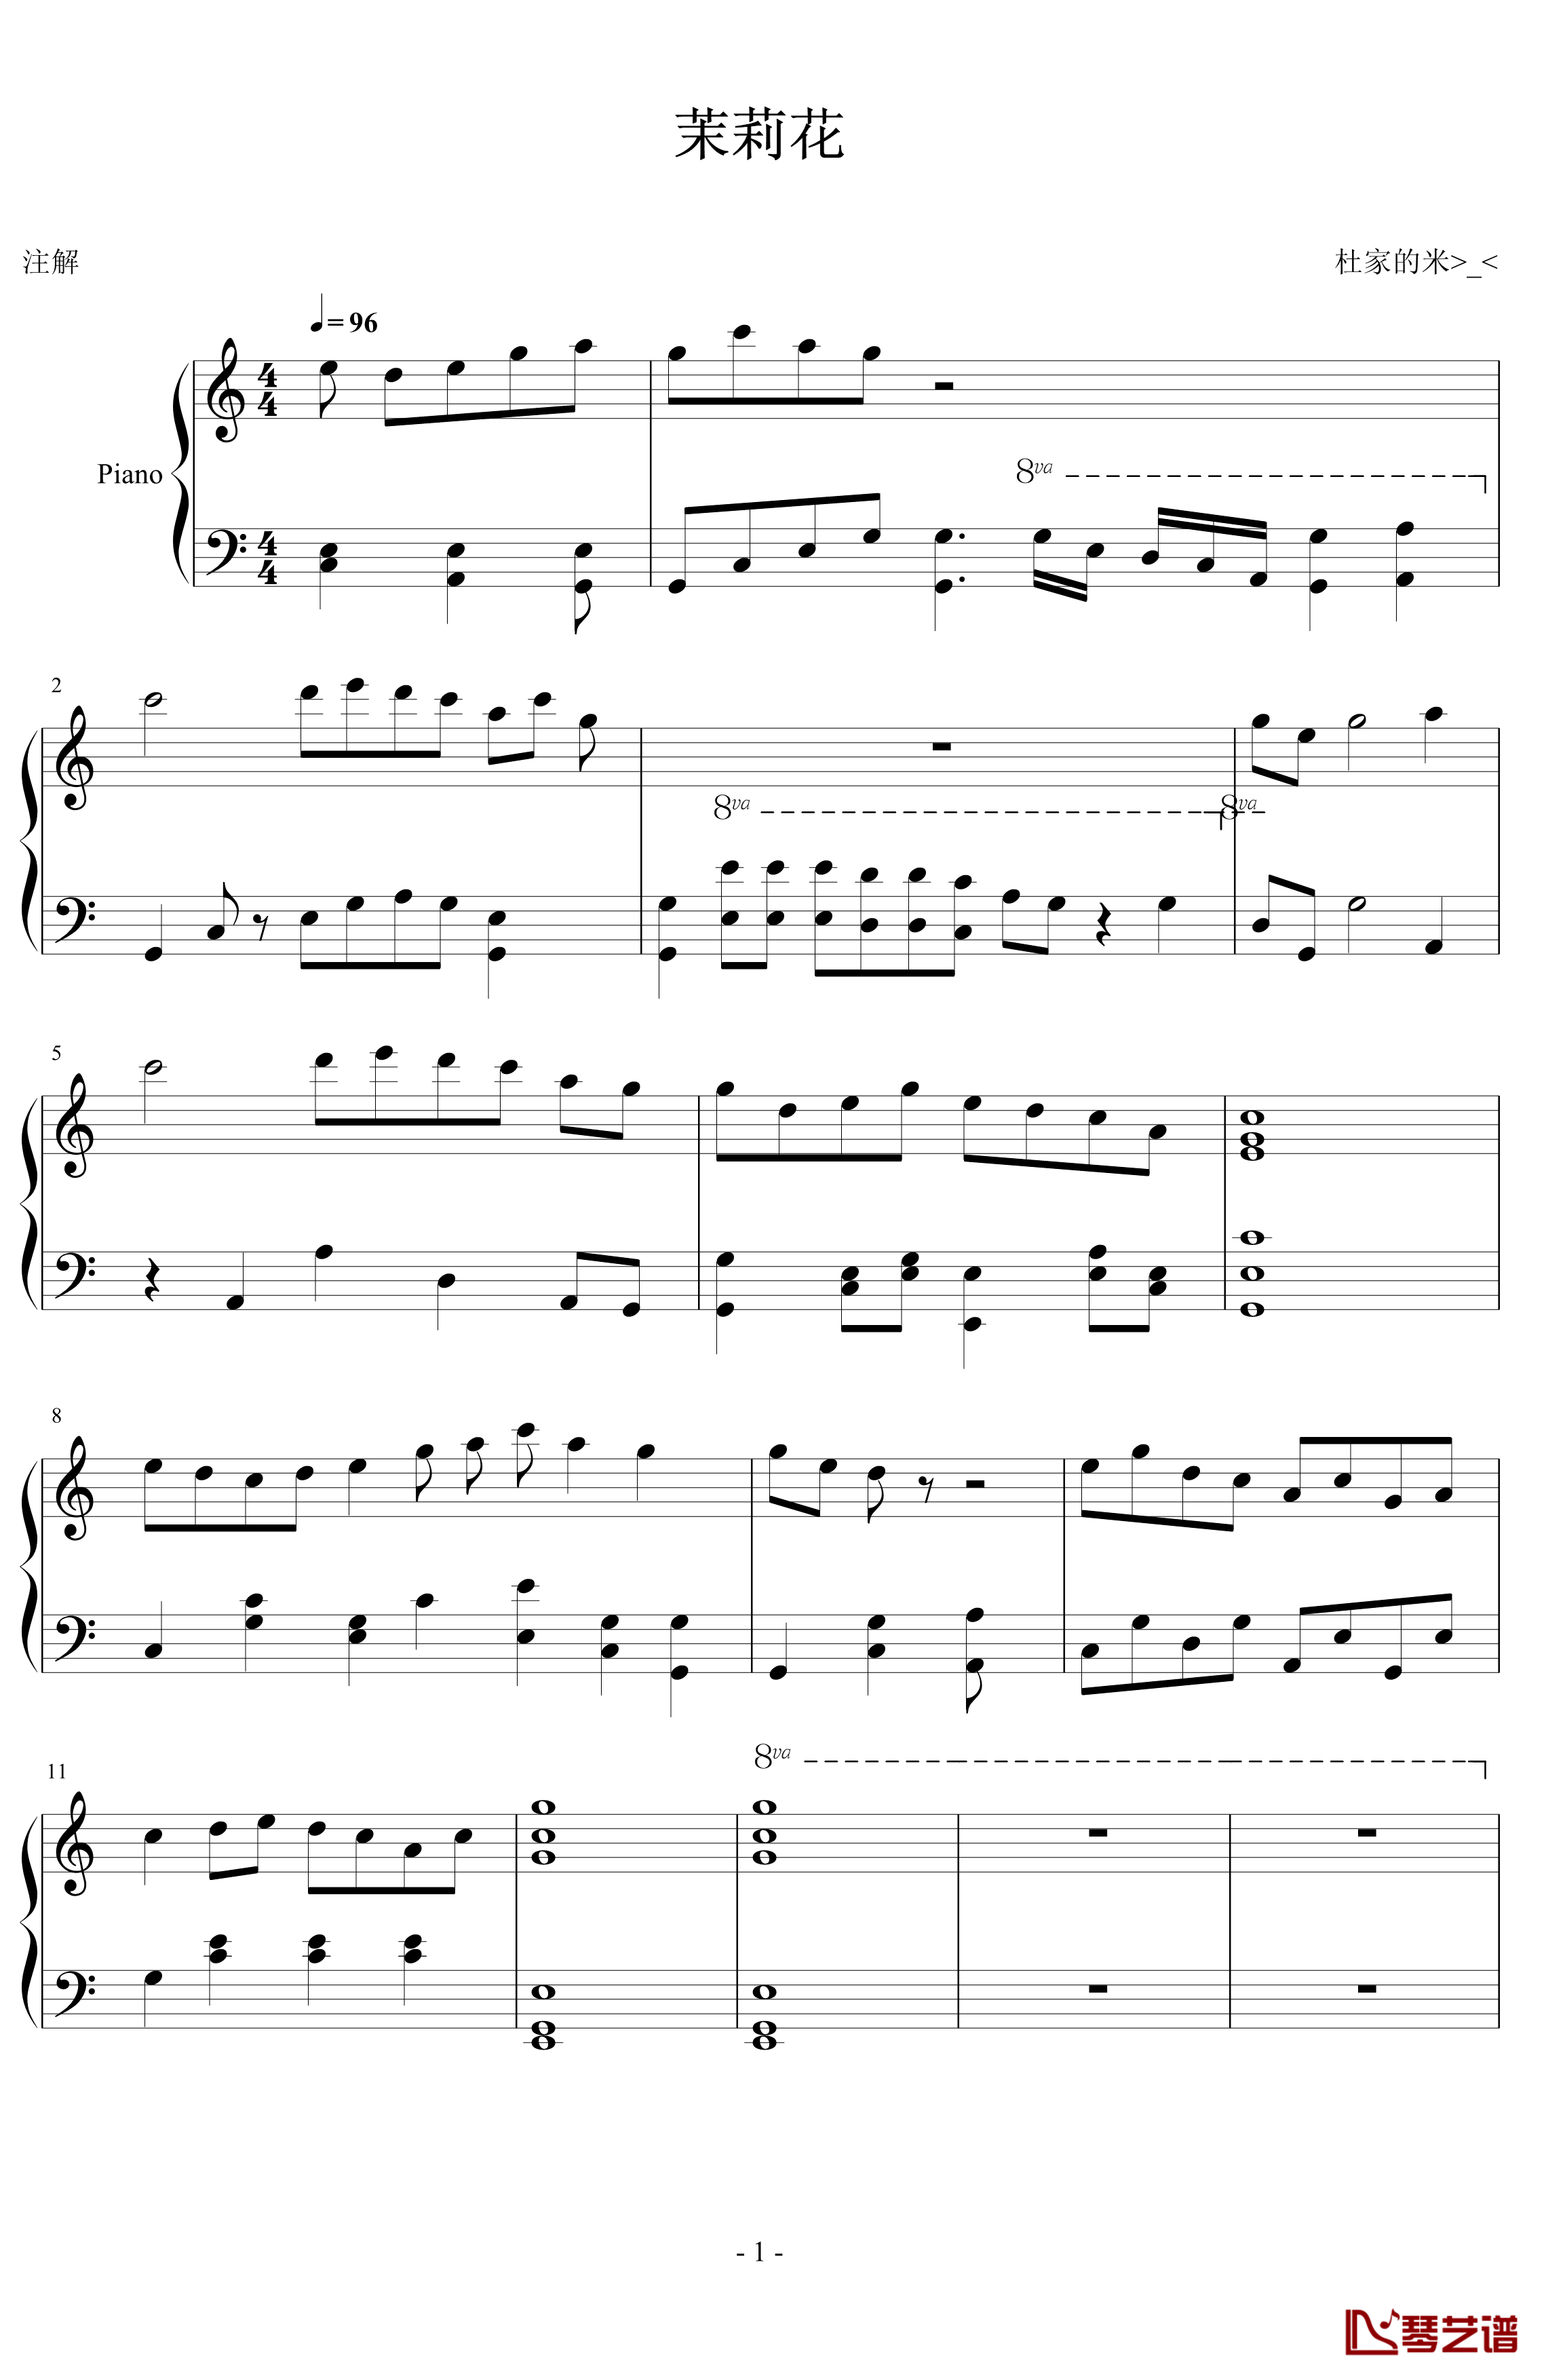 茉莉花钢琴谱-中国名曲1